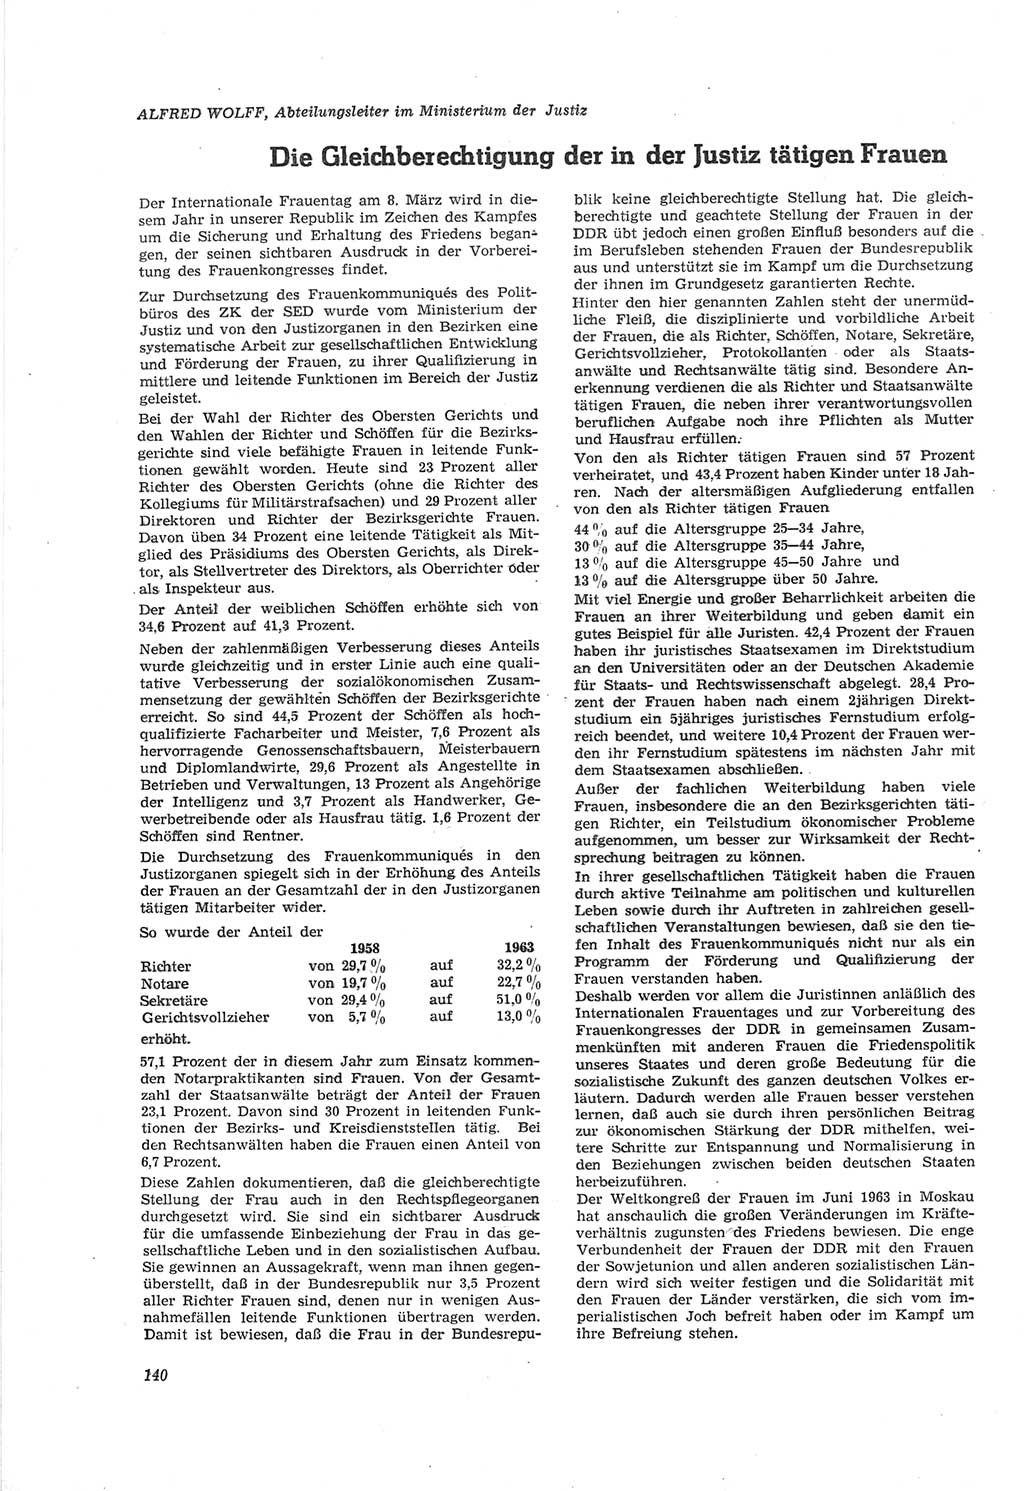 Neue Justiz (NJ), Zeitschrift für Recht und Rechtswissenschaft [Deutsche Demokratische Republik (DDR)], 18. Jahrgang 1964, Seite 140 (NJ DDR 1964, S. 140)